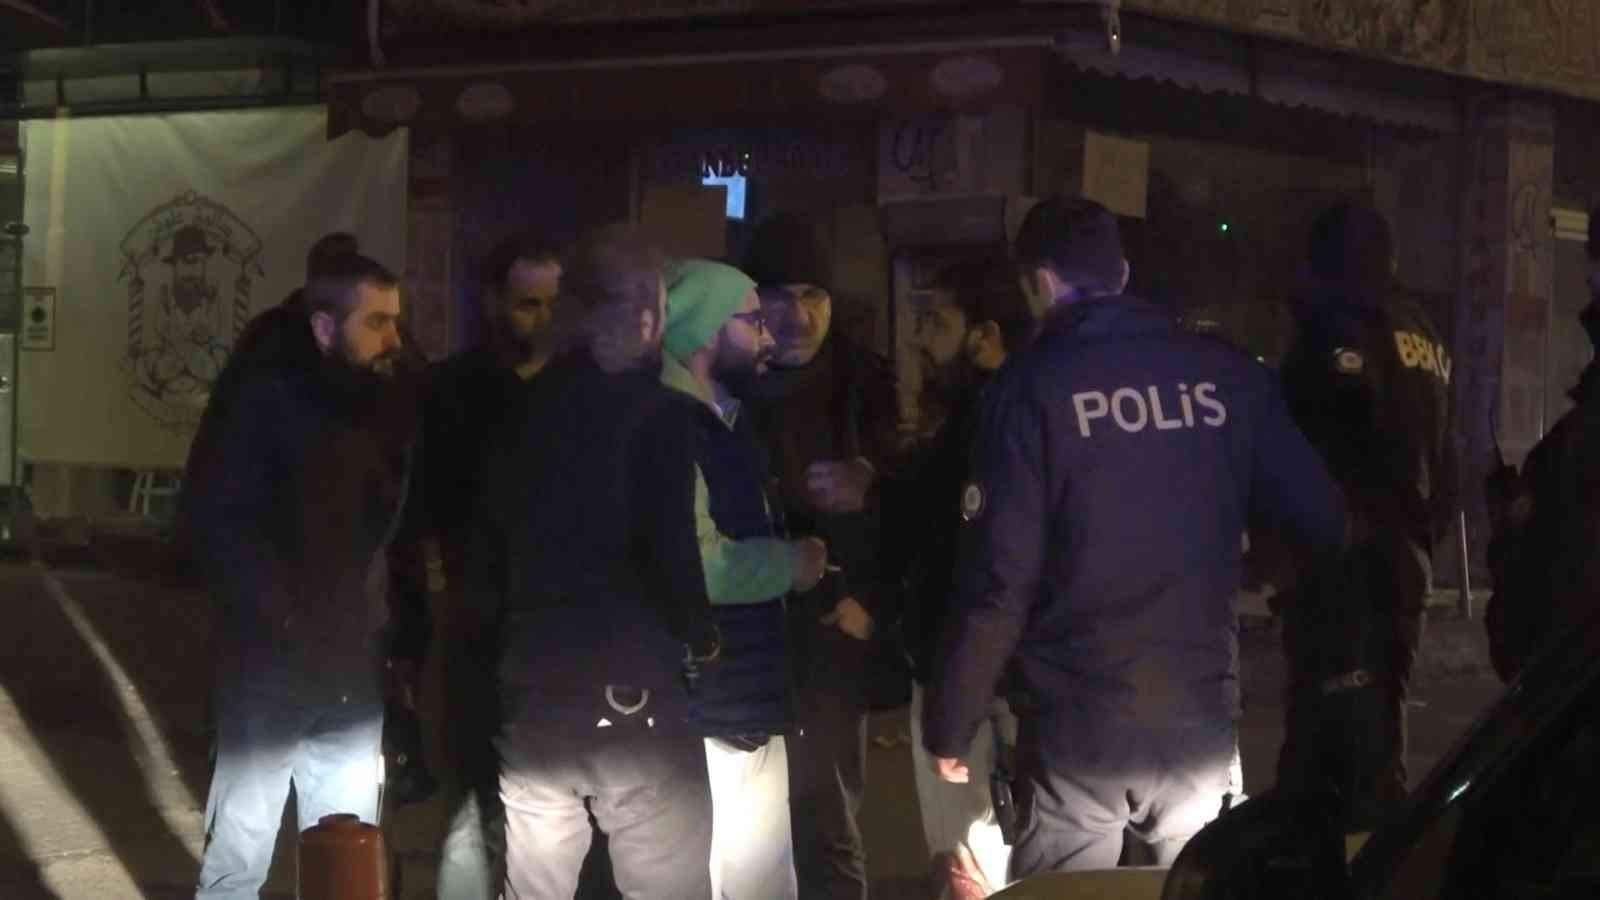 Bursa’da sözlü tartışma silahlı kavgaya dönüştü: 1 ağır yaralı